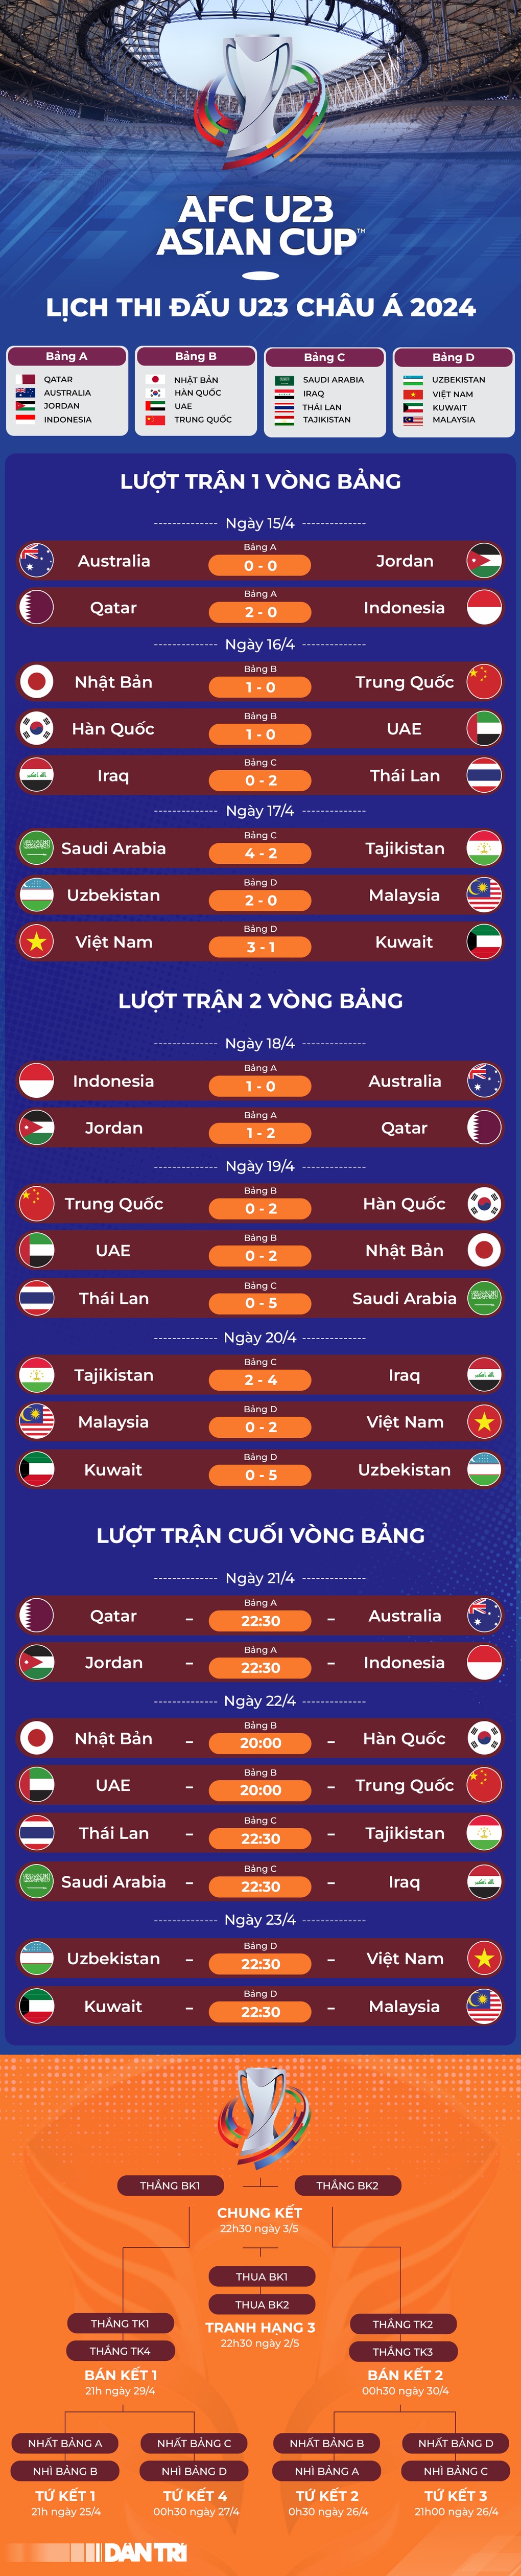 HLV Hoàng Anh Tuấn: U23 Việt Nam thắng xứng đáng U23 Malaysia - 3